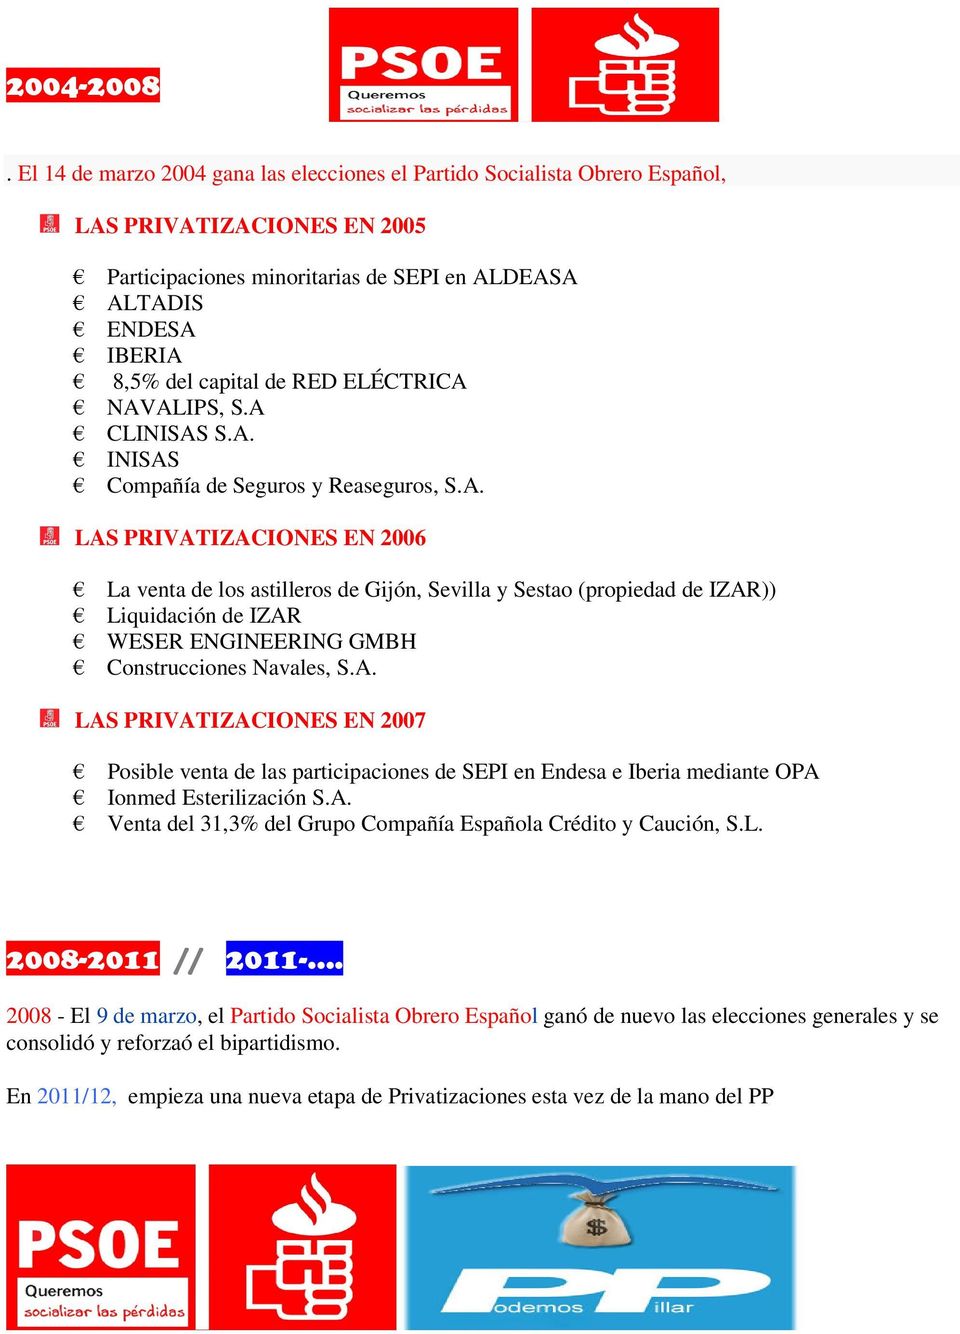 ELÉCTRICA NAVALIPS, S.A CLINISAS S.A. INISAS Compañía de Seguros y Reaseguros, S.A. LAS PRIVATIZACIONES EN 2006 La venta de los astilleros de Gijón, Sevilla y Sestao (propiedad de IZAR)) Liquidación de IZAR WESER ENGINEERING GMBH Construcciones Navales, S.